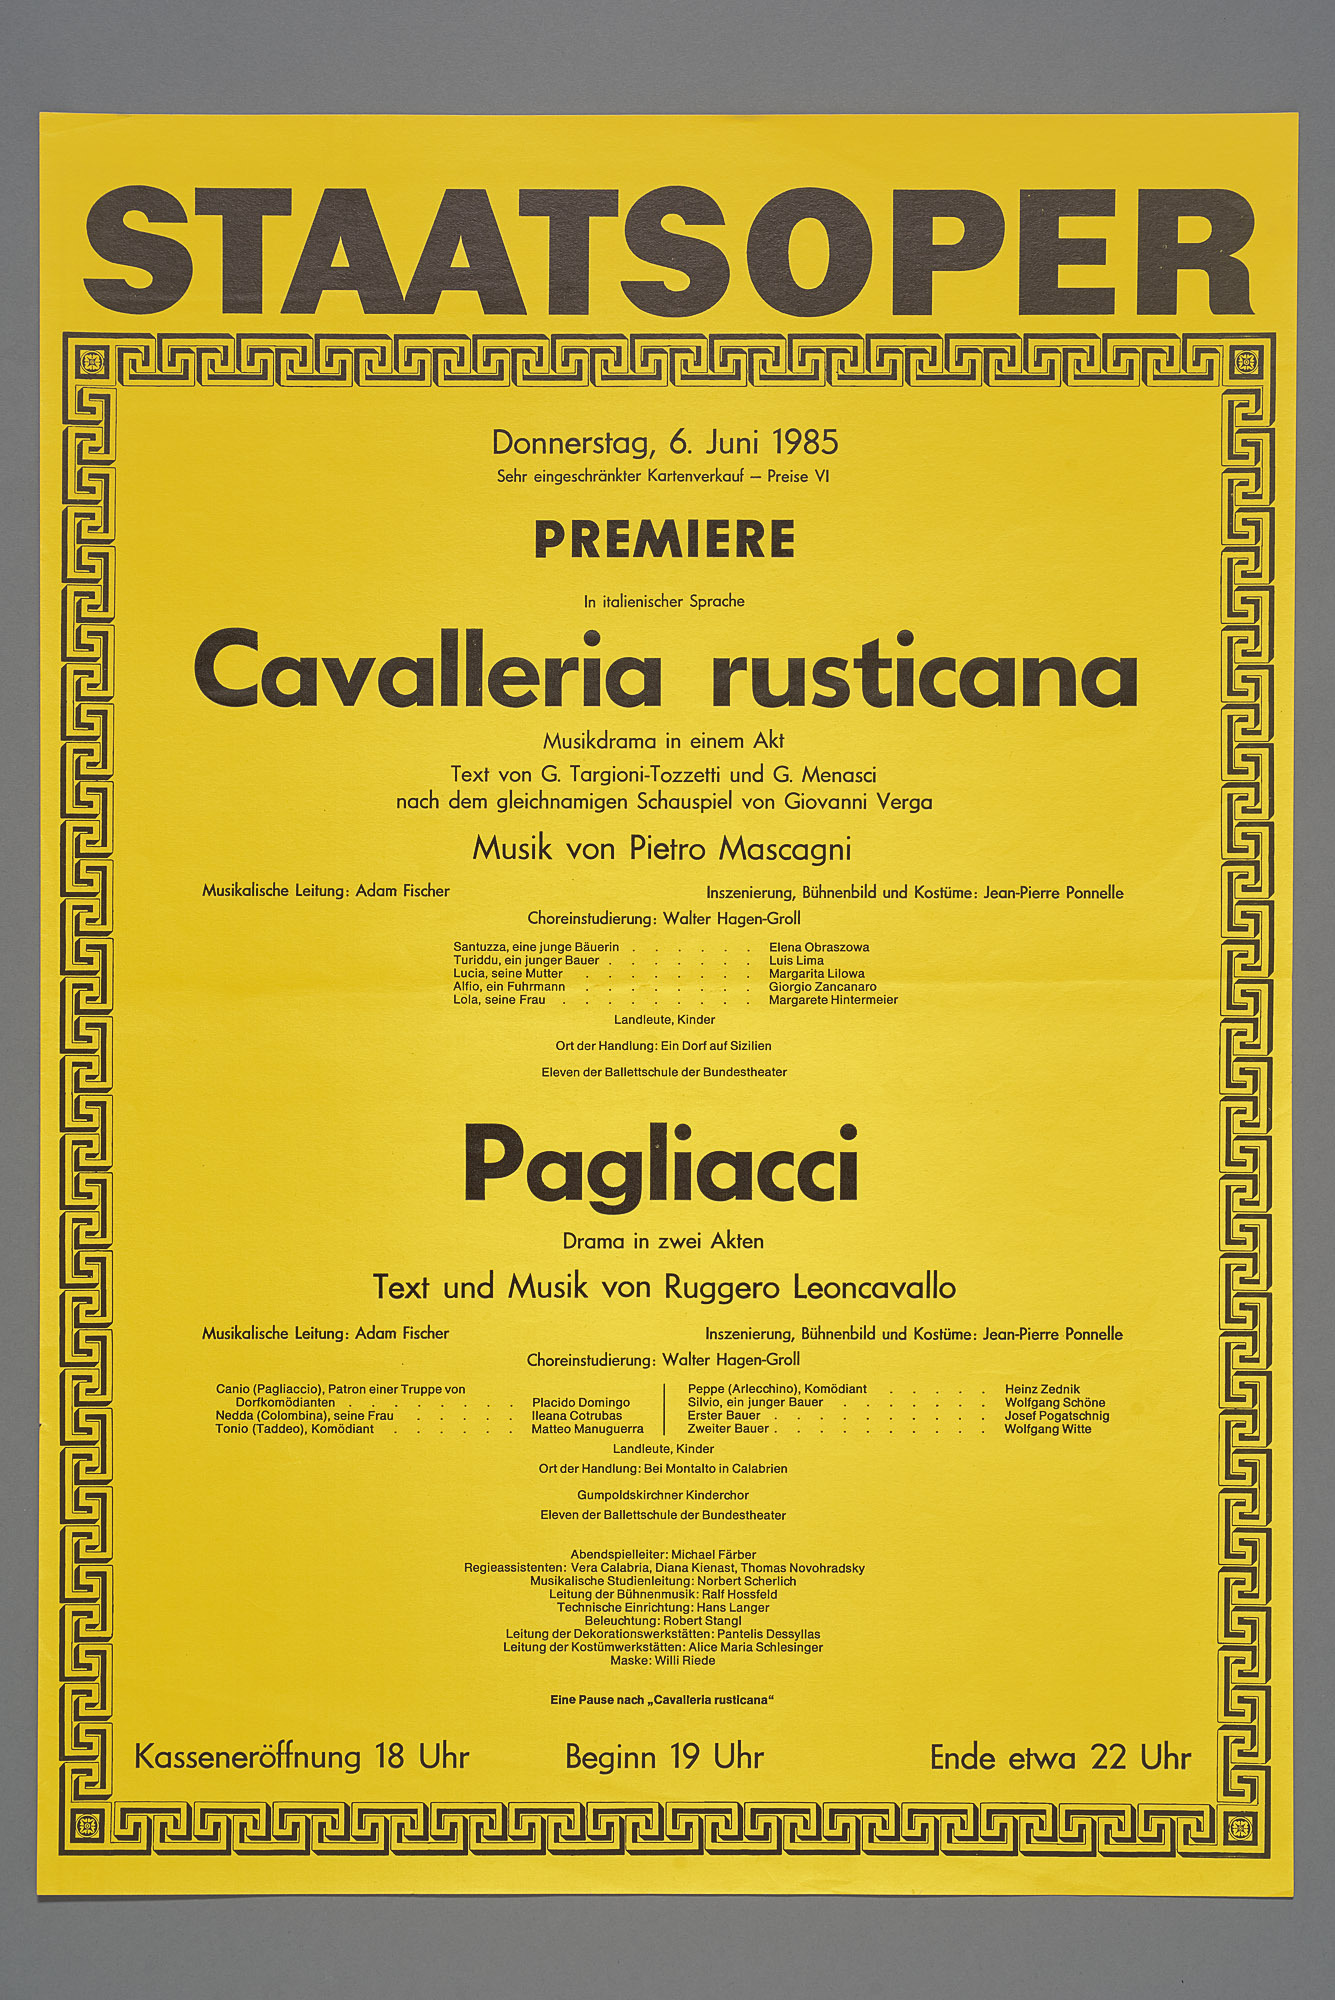 Cavalleria rusticana von Pietro Mascagni